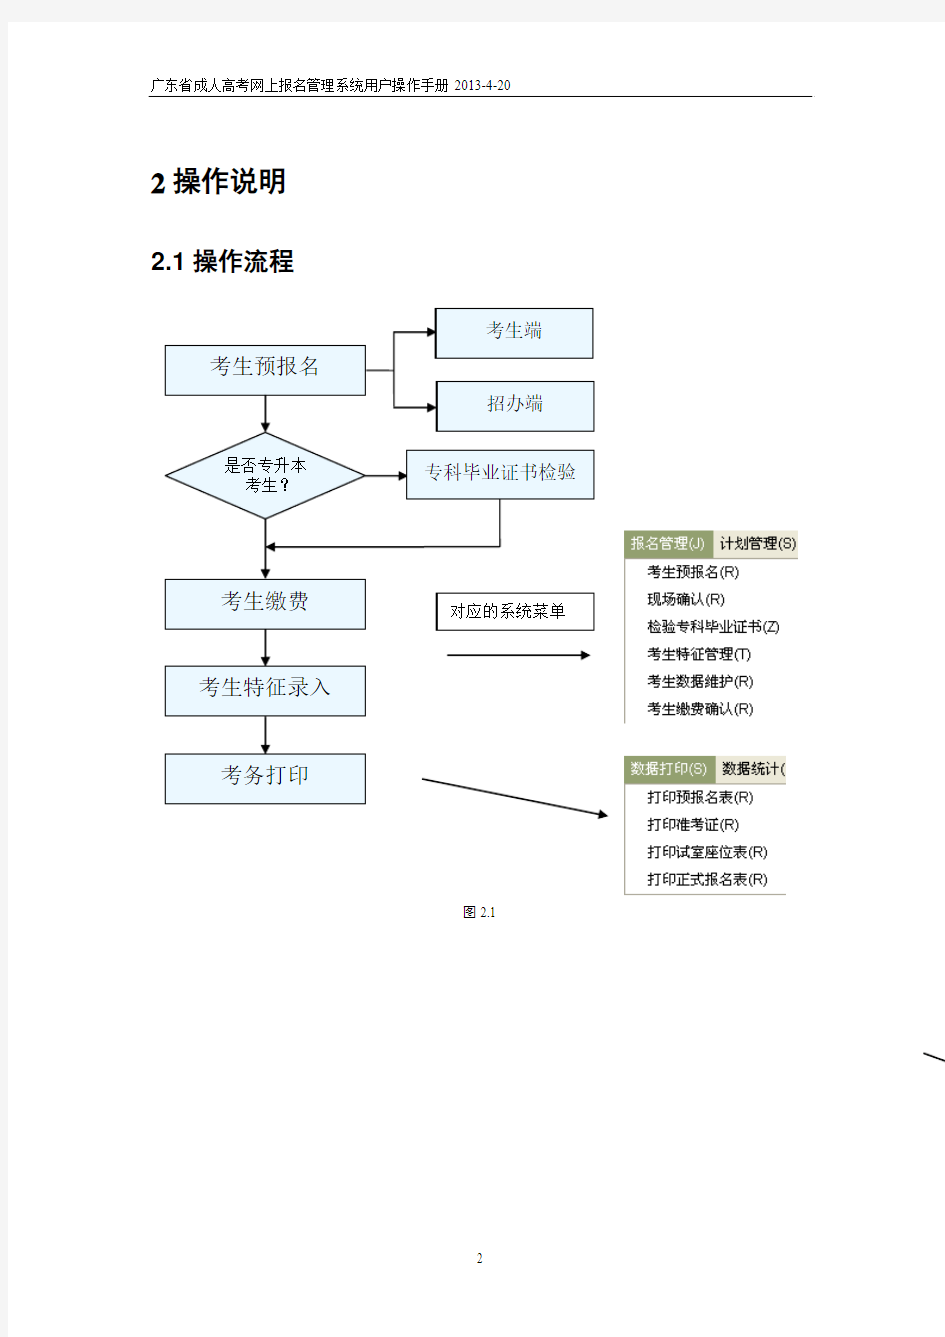 广东省成人高考报名管理系统操作说明书